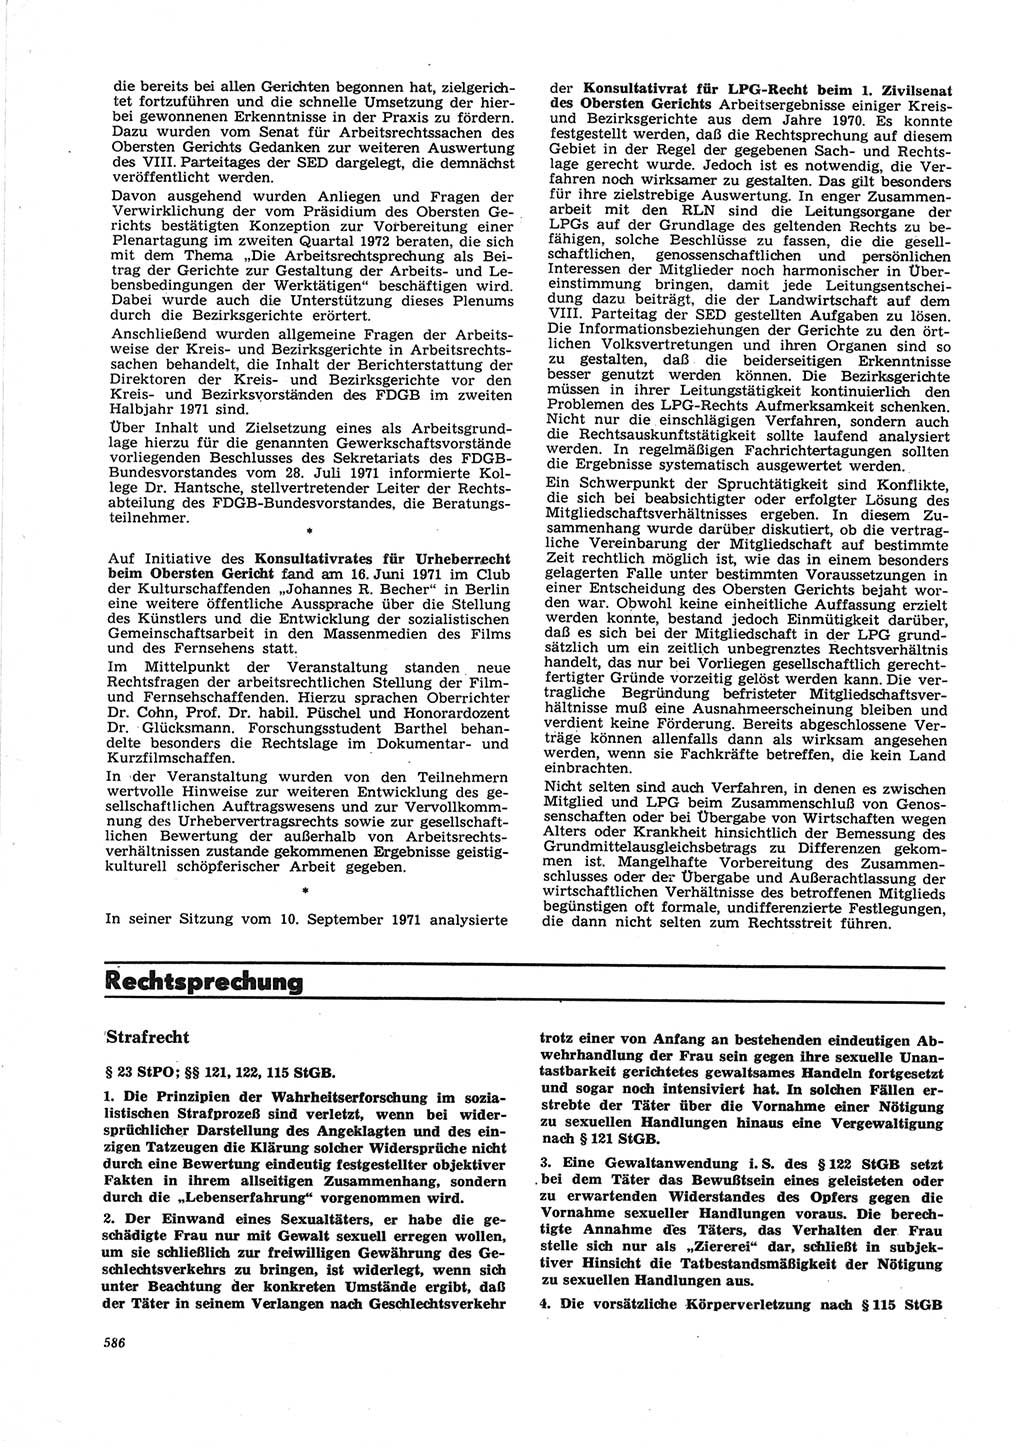 Neue Justiz (NJ), Zeitschrift für Recht und Rechtswissenschaft [Deutsche Demokratische Republik (DDR)], 25. Jahrgang 1971, Seite 586 (NJ DDR 1971, S. 586)